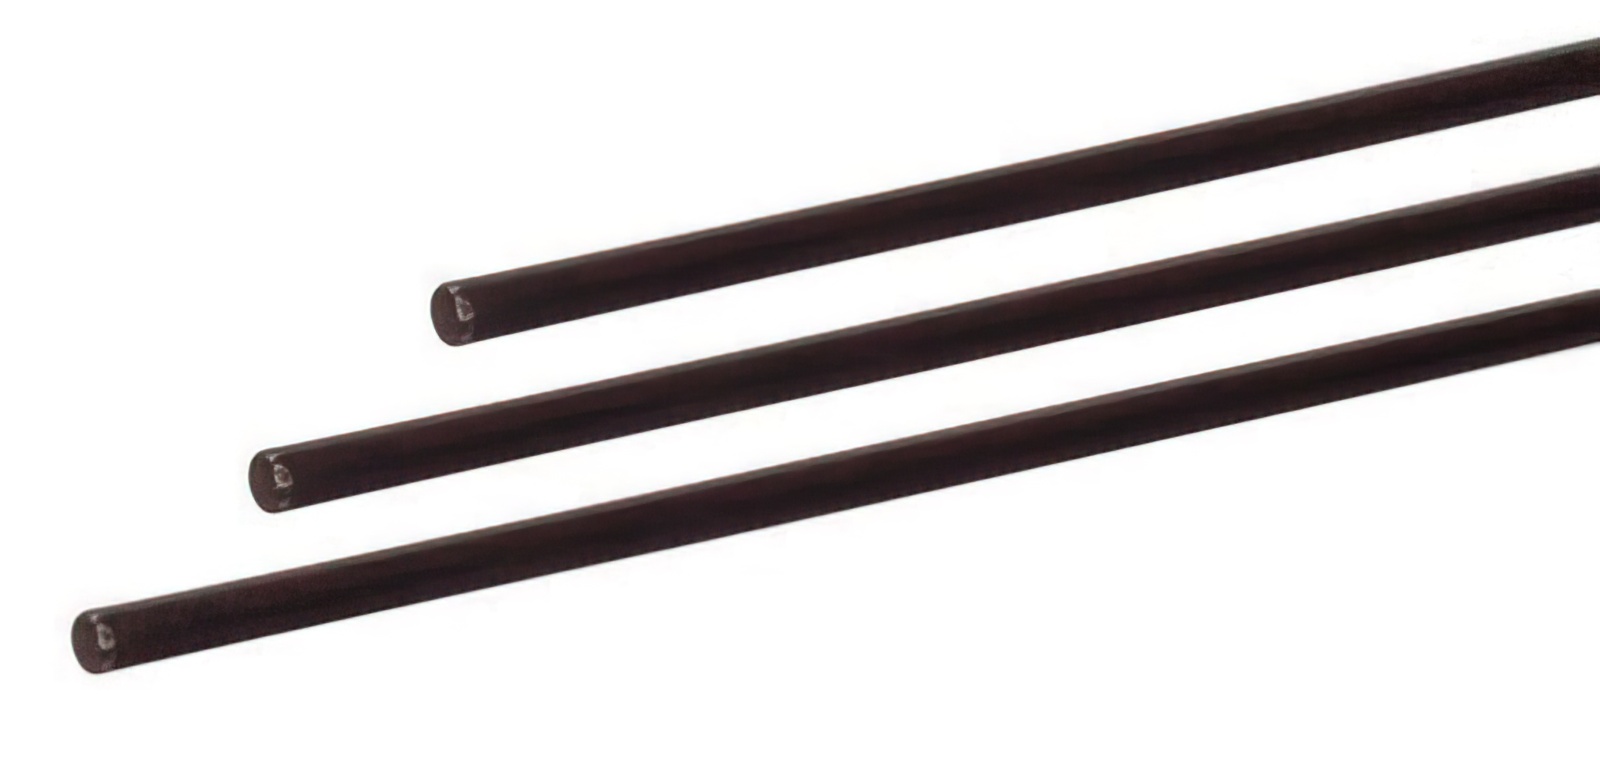 2 Stück - Gfk-Vollstab (Fiberglasstab/Glasfaserstab) 5 mm 100 cm schwarz für Drachen- und Modellbau Basteln Montagen Messebau Industrie Haushalt